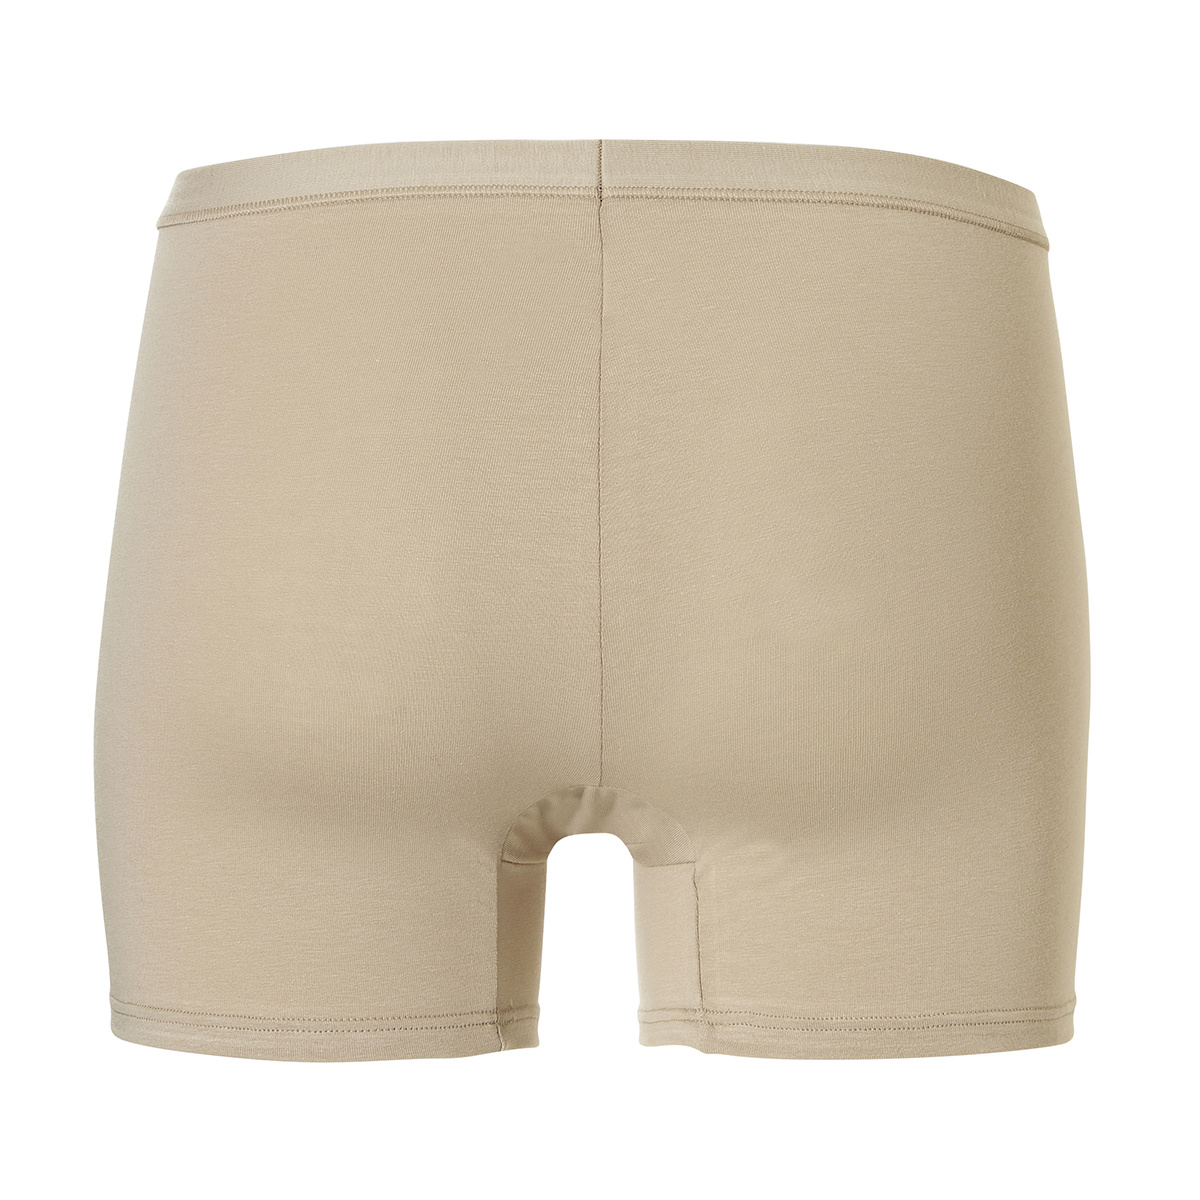 Cotonella Ladies Boxer Shorts Cotton Beige 2-Pack Skinn